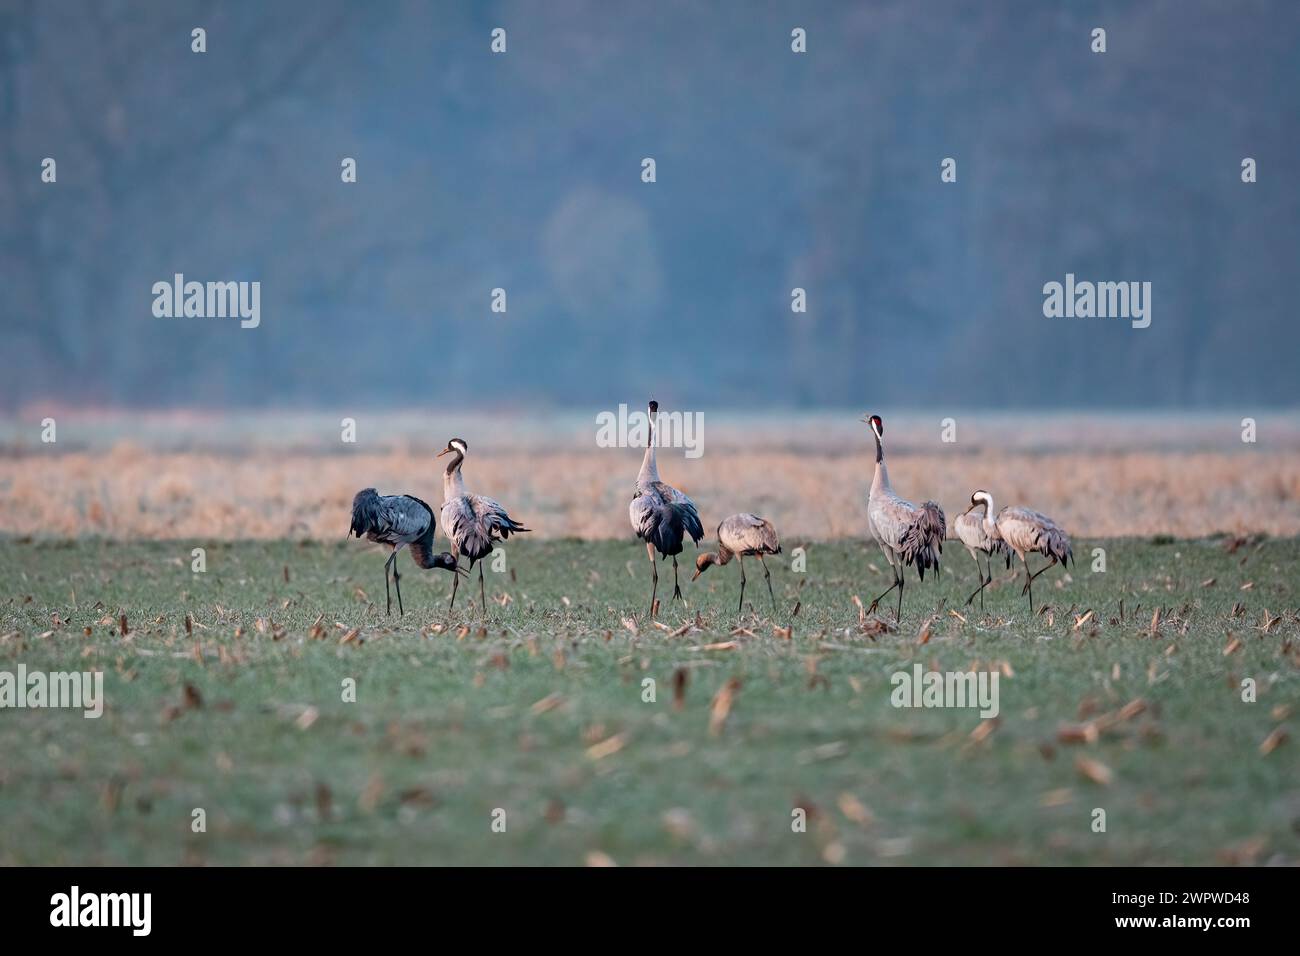 Crane birds in the wild Stock Photo